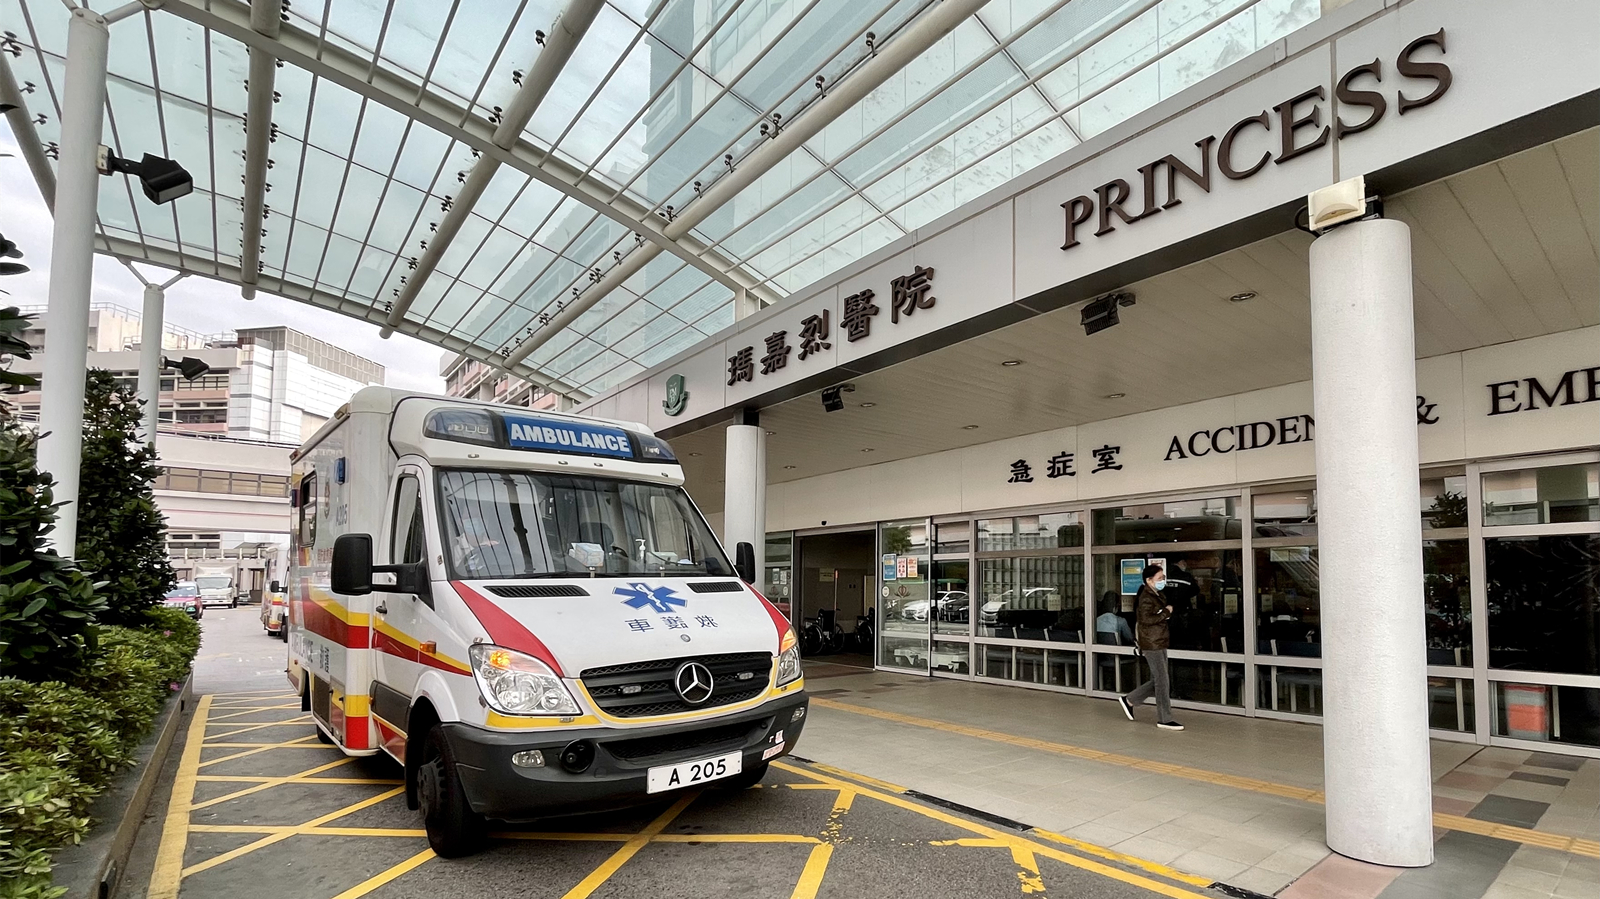 青葵公路的士失控撞工程車 司機及女乘客受傷送院